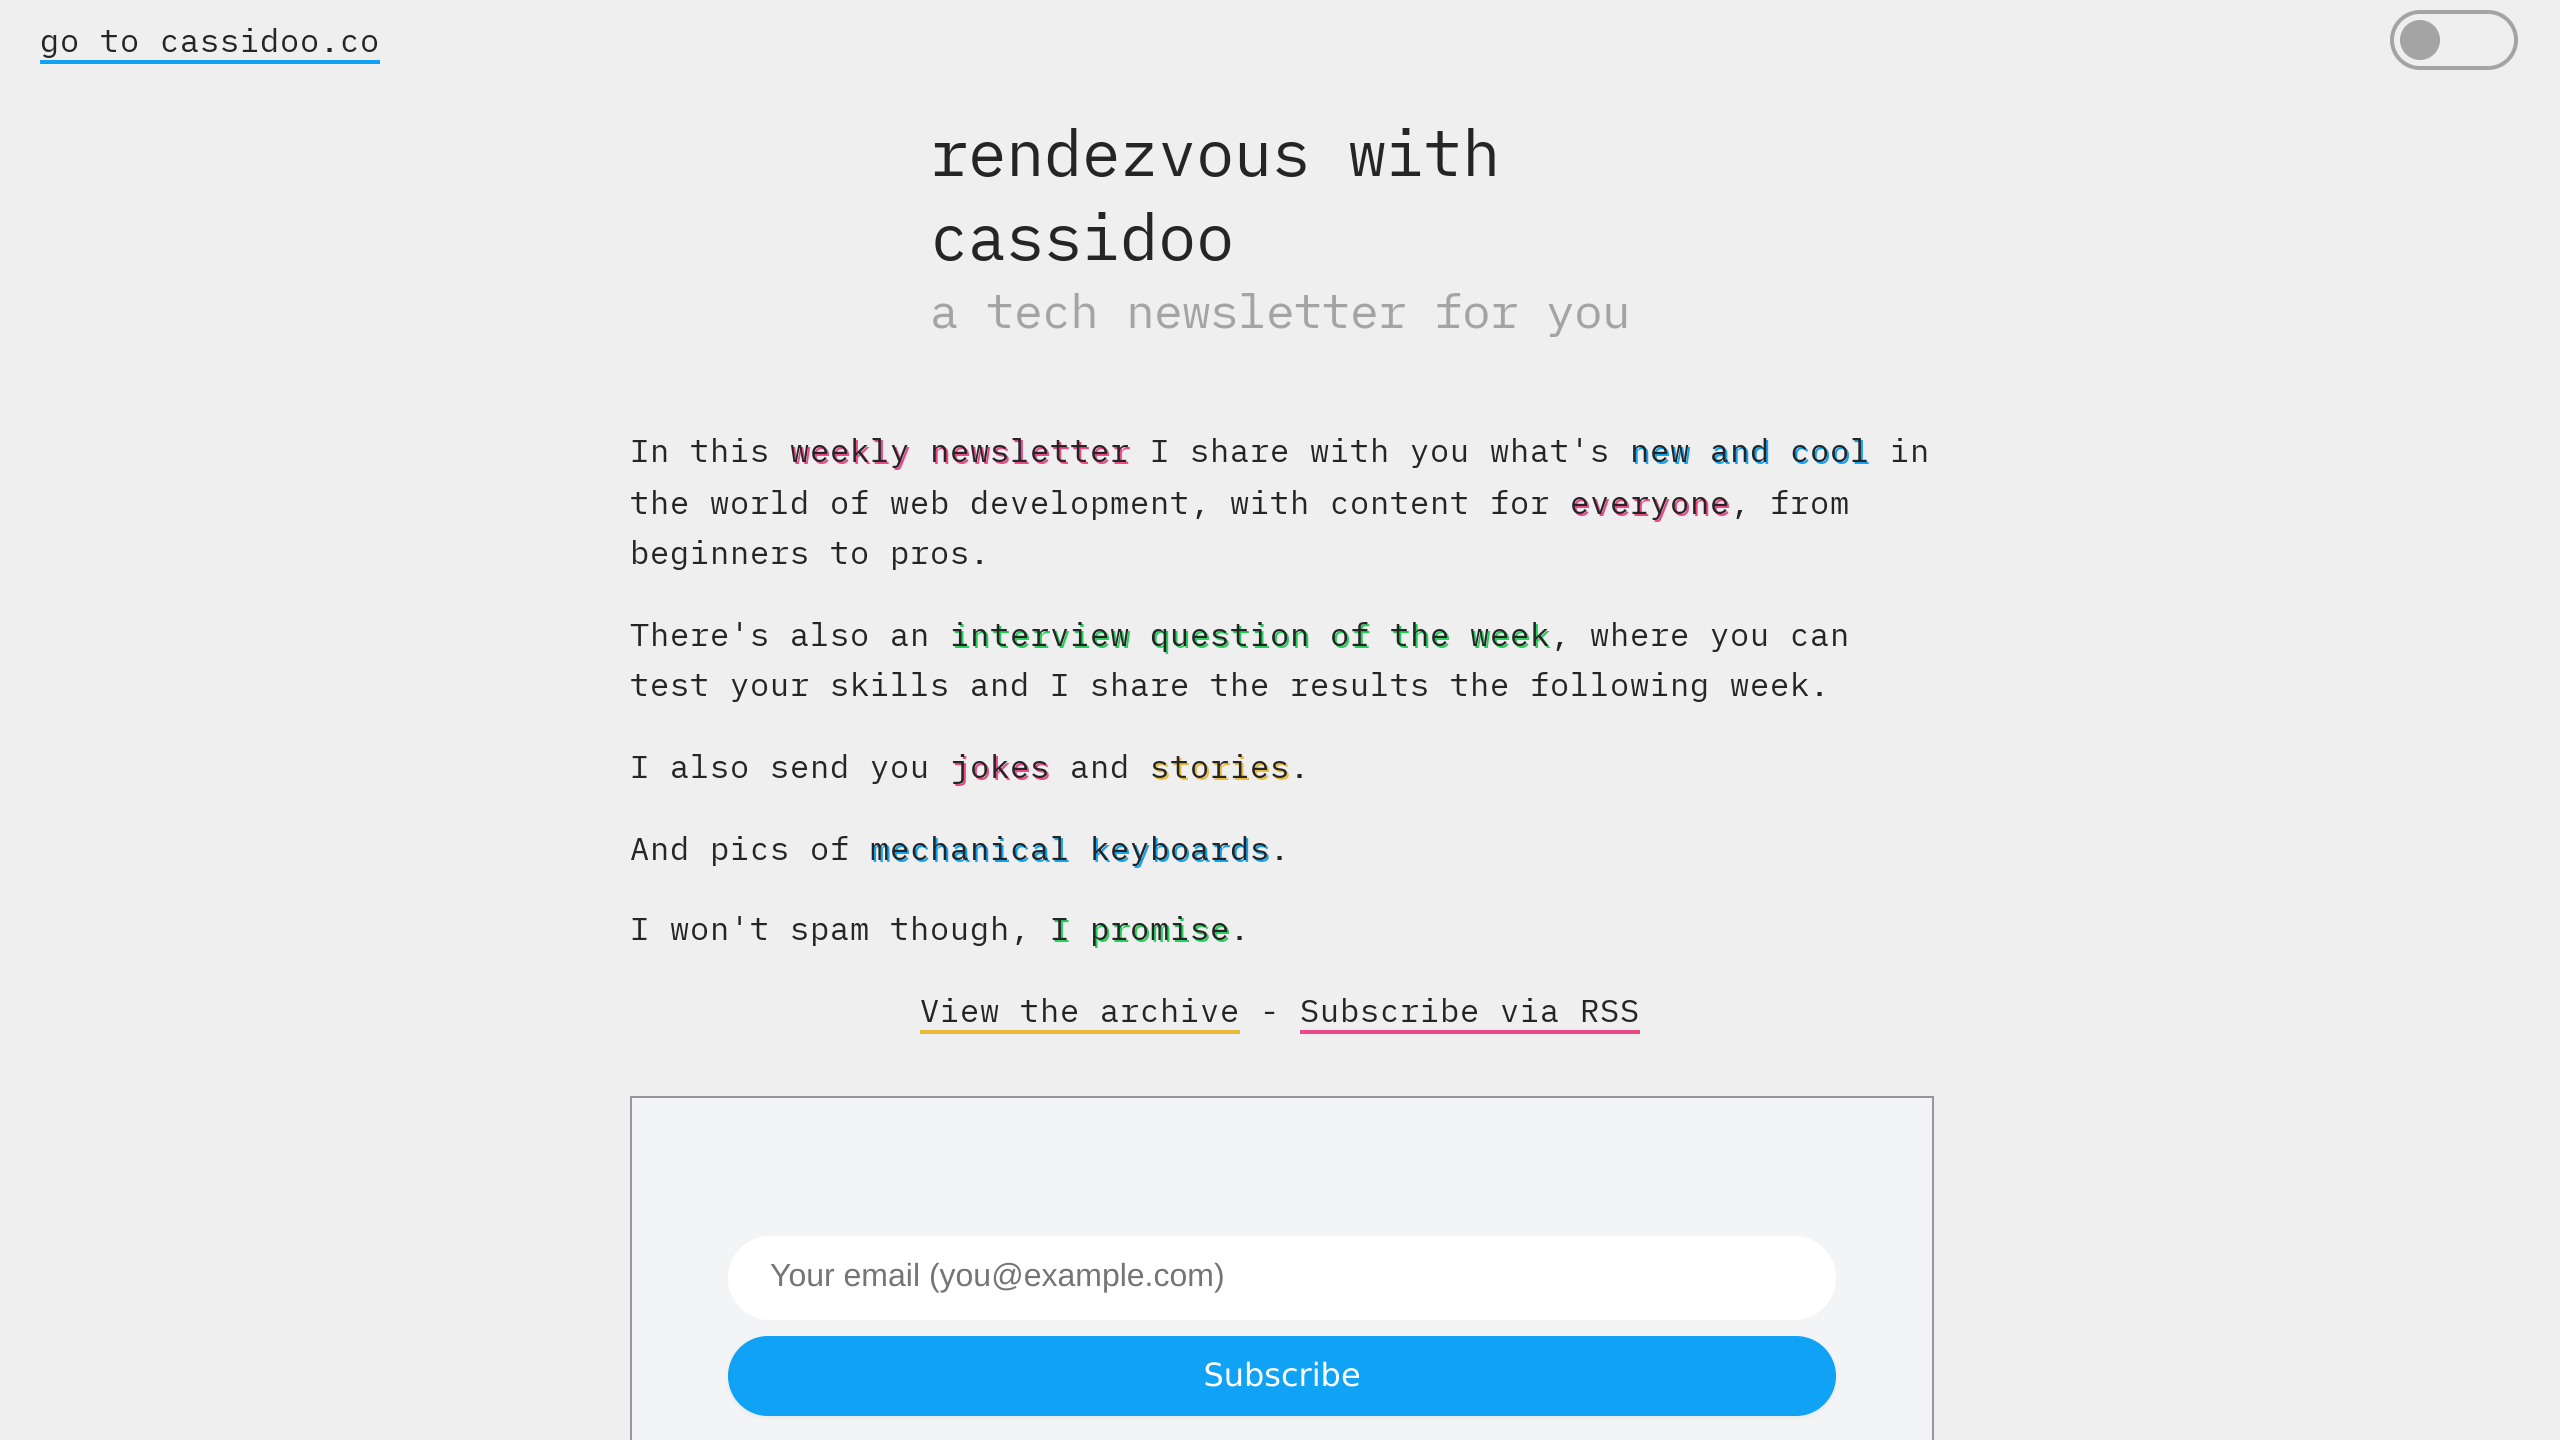 rendezvous with cassidoo's website screenshot